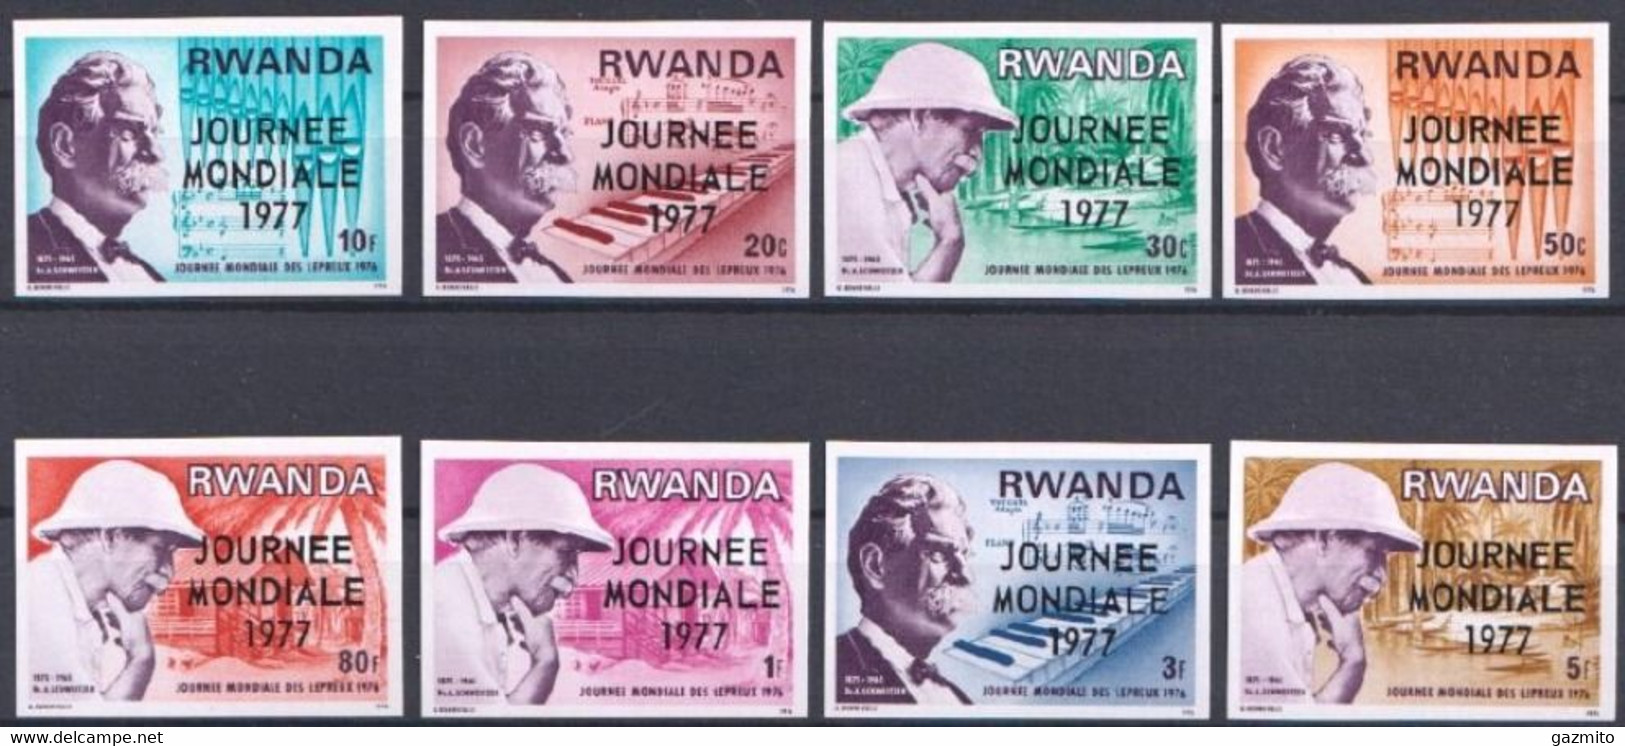 Rwanda 1977, Schweitzer, Overprinted, 8val IMPERFORATED - Albert Schweitzer